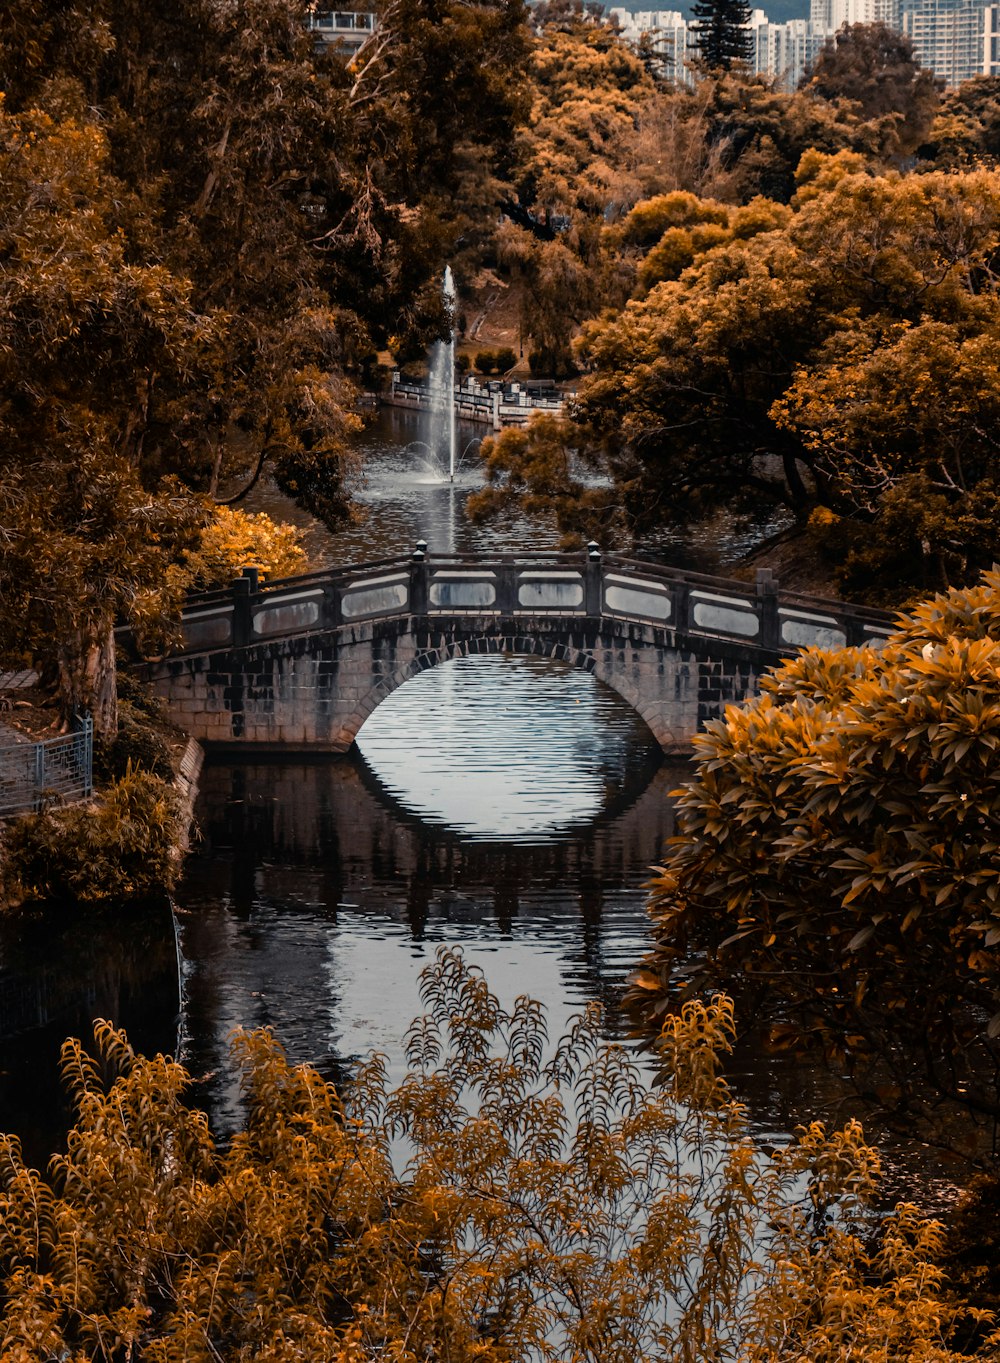 un pont sur une rivière avec une fontaine au milieu